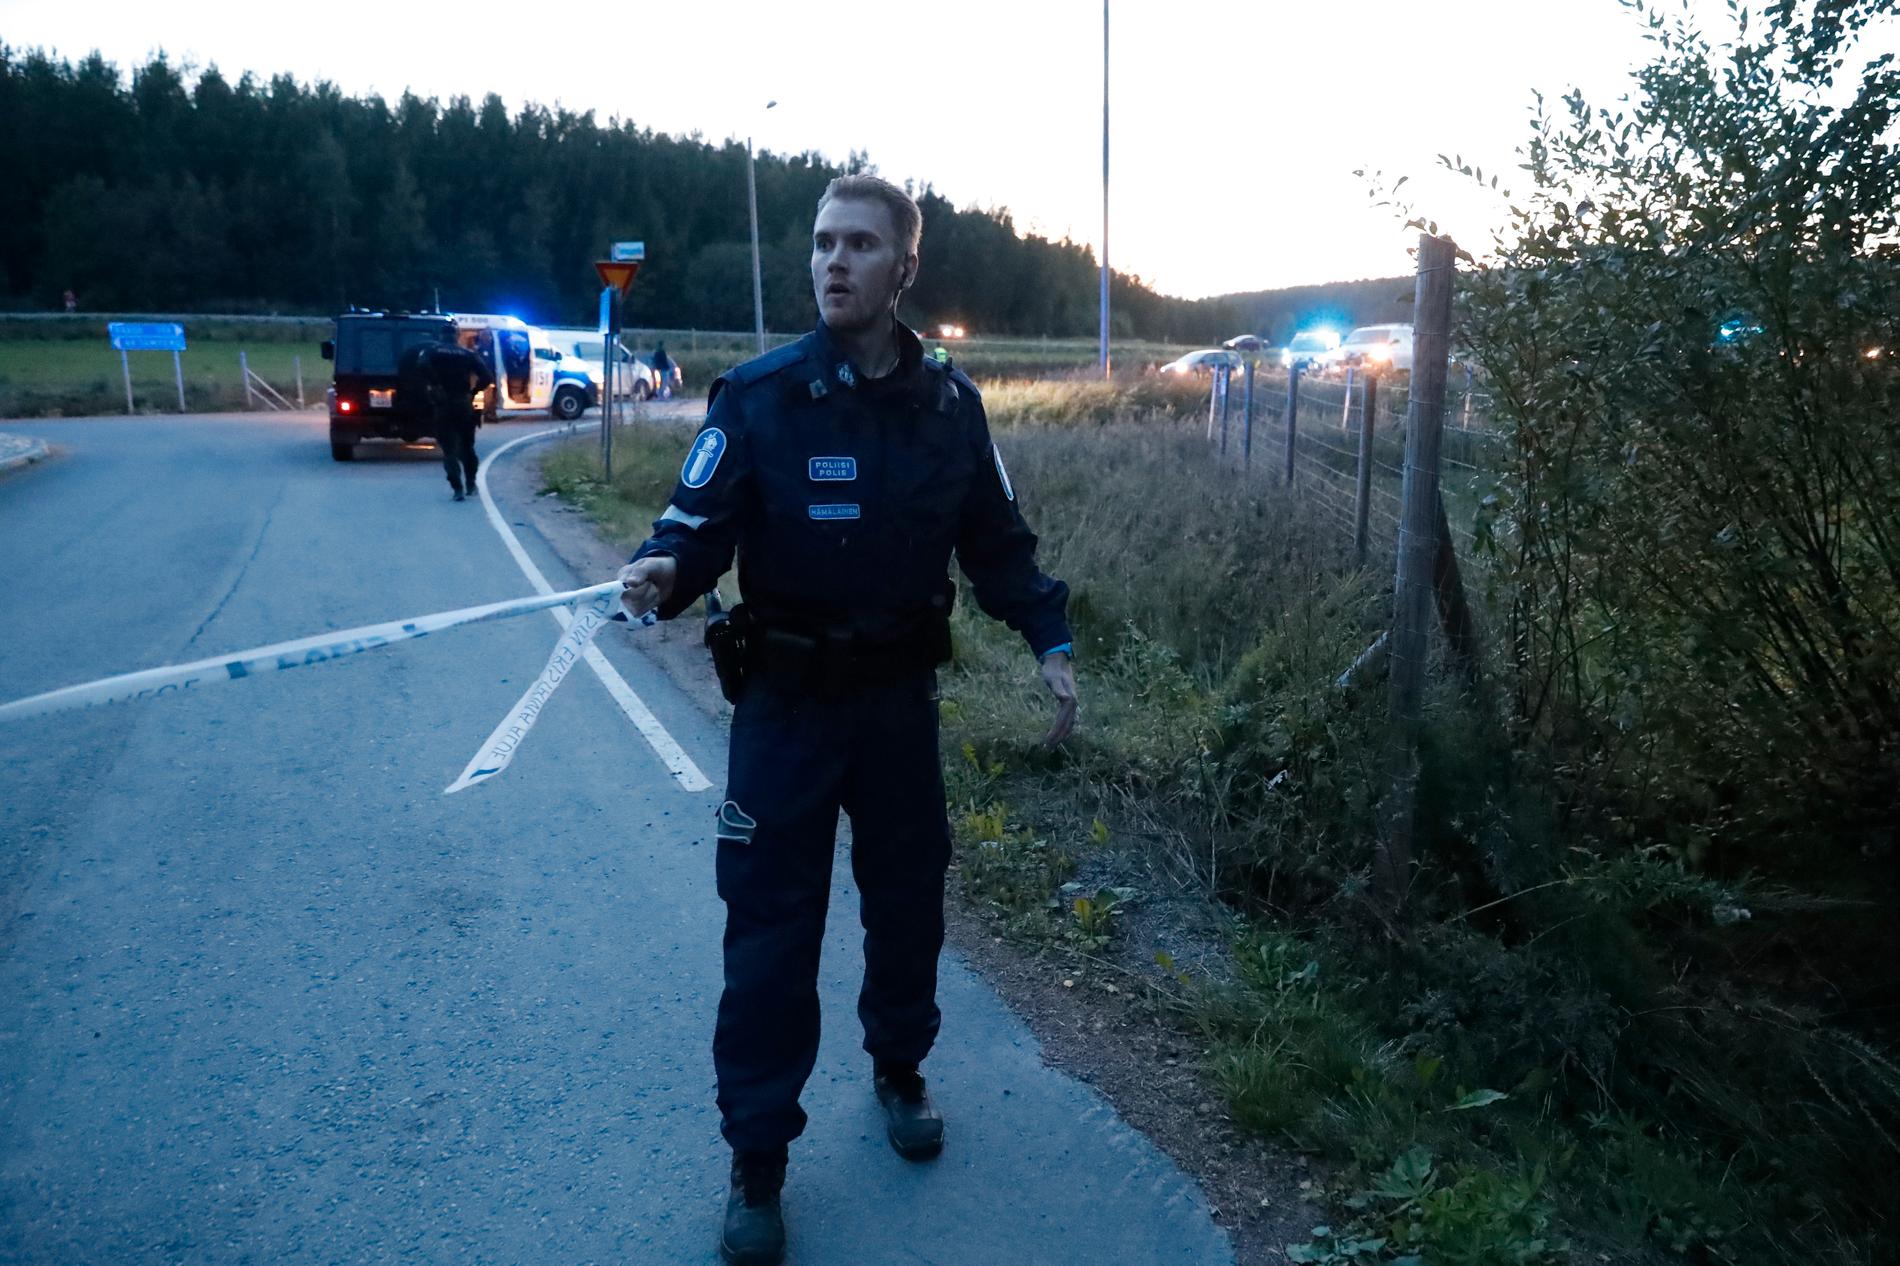 Polis arbetar under söndagskvällens polisinsats i Tammerfors.